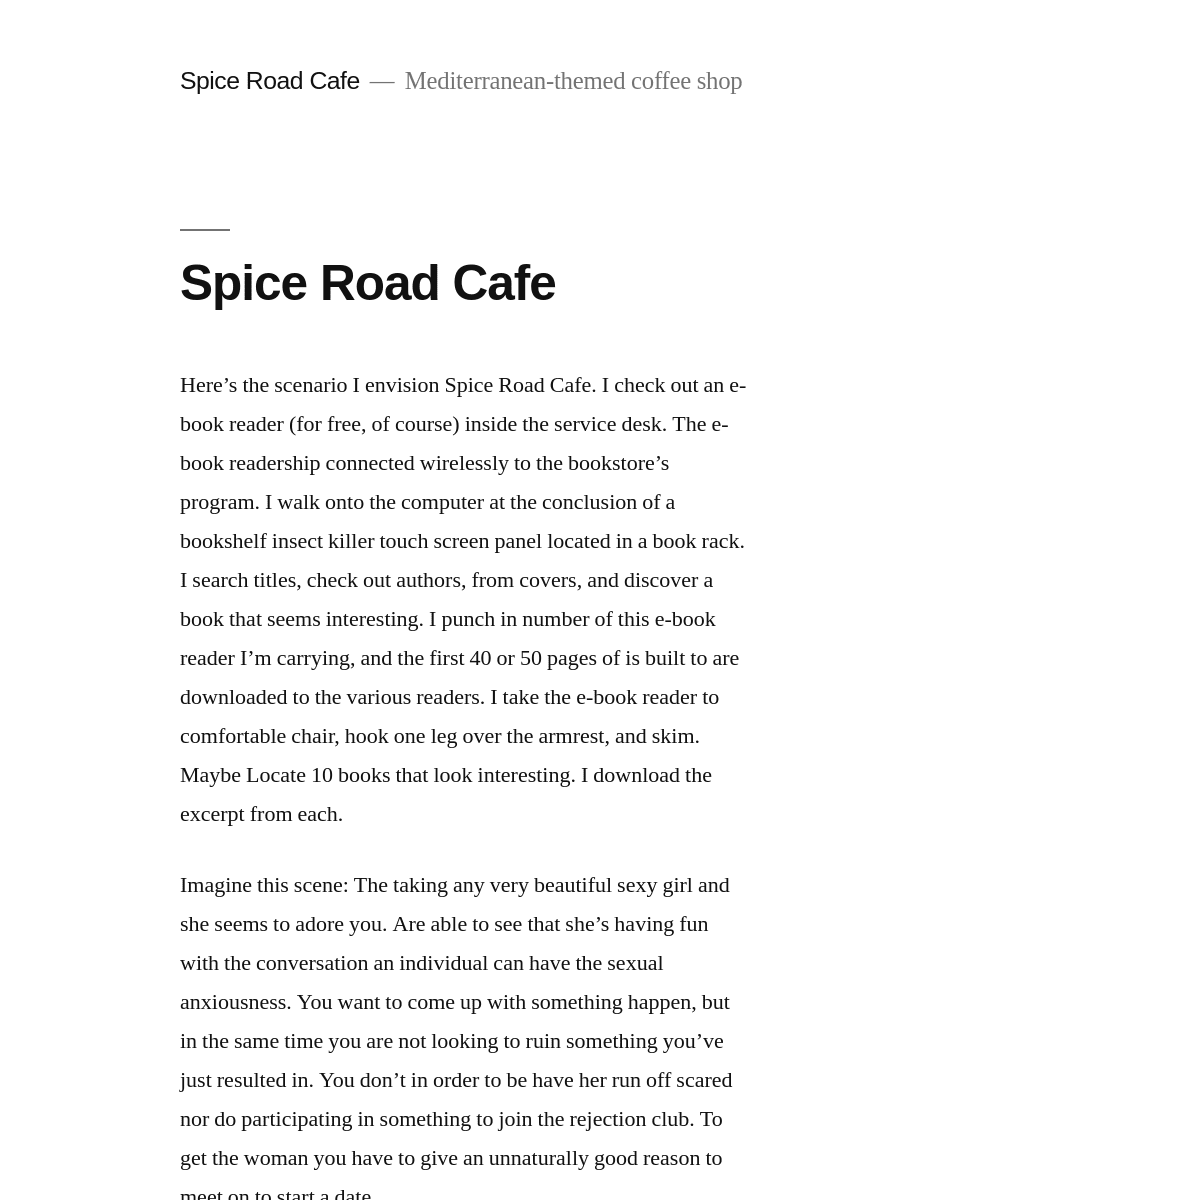 A complete backup of https://spiceroadcafe.com